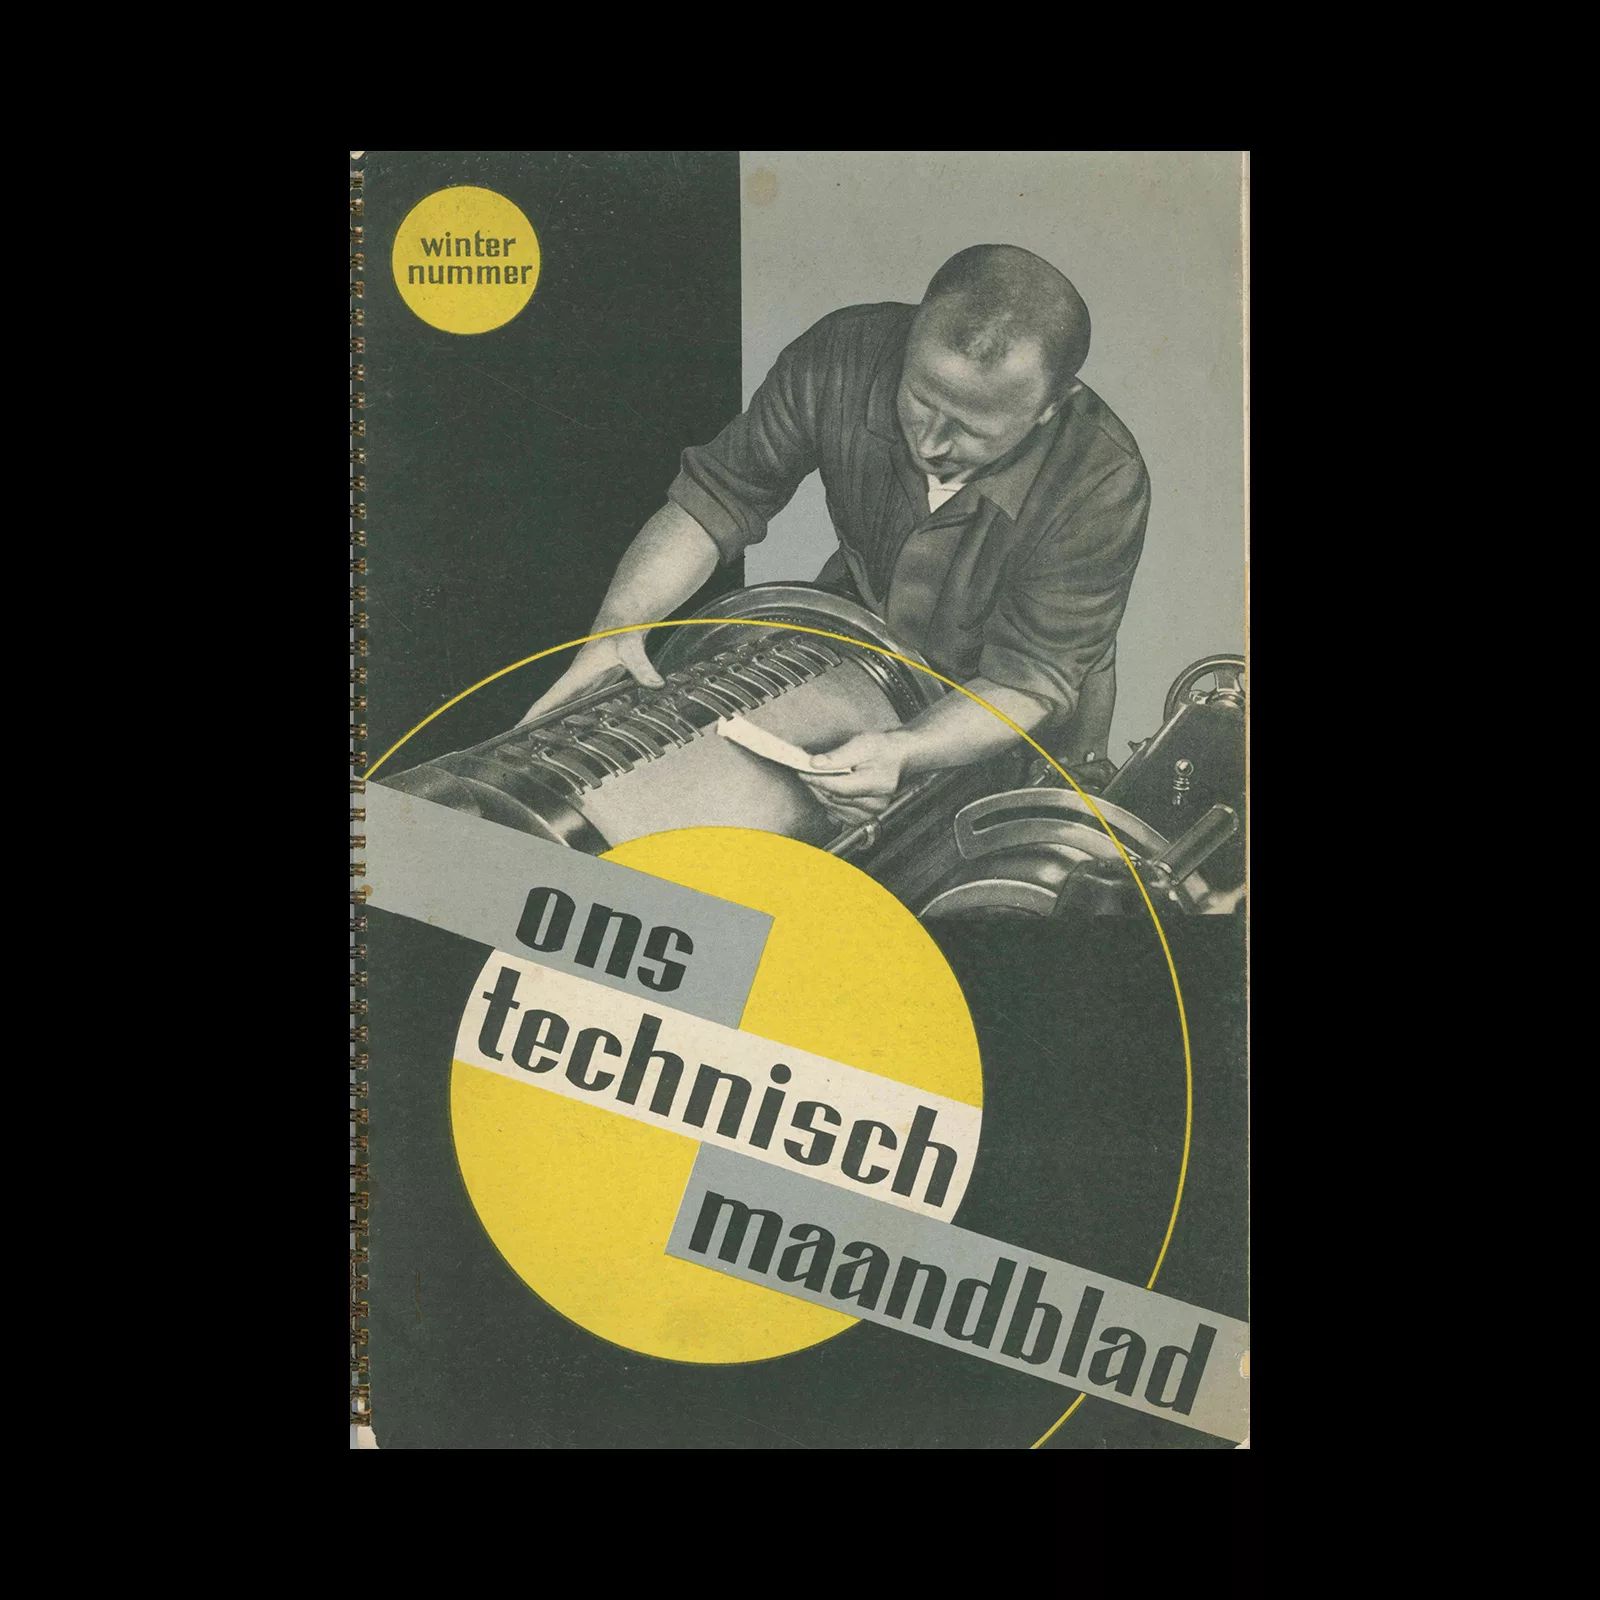 Ons Technisch Maandblad, OTM. Winternummer, 1937. Designed by Nan Platvoet